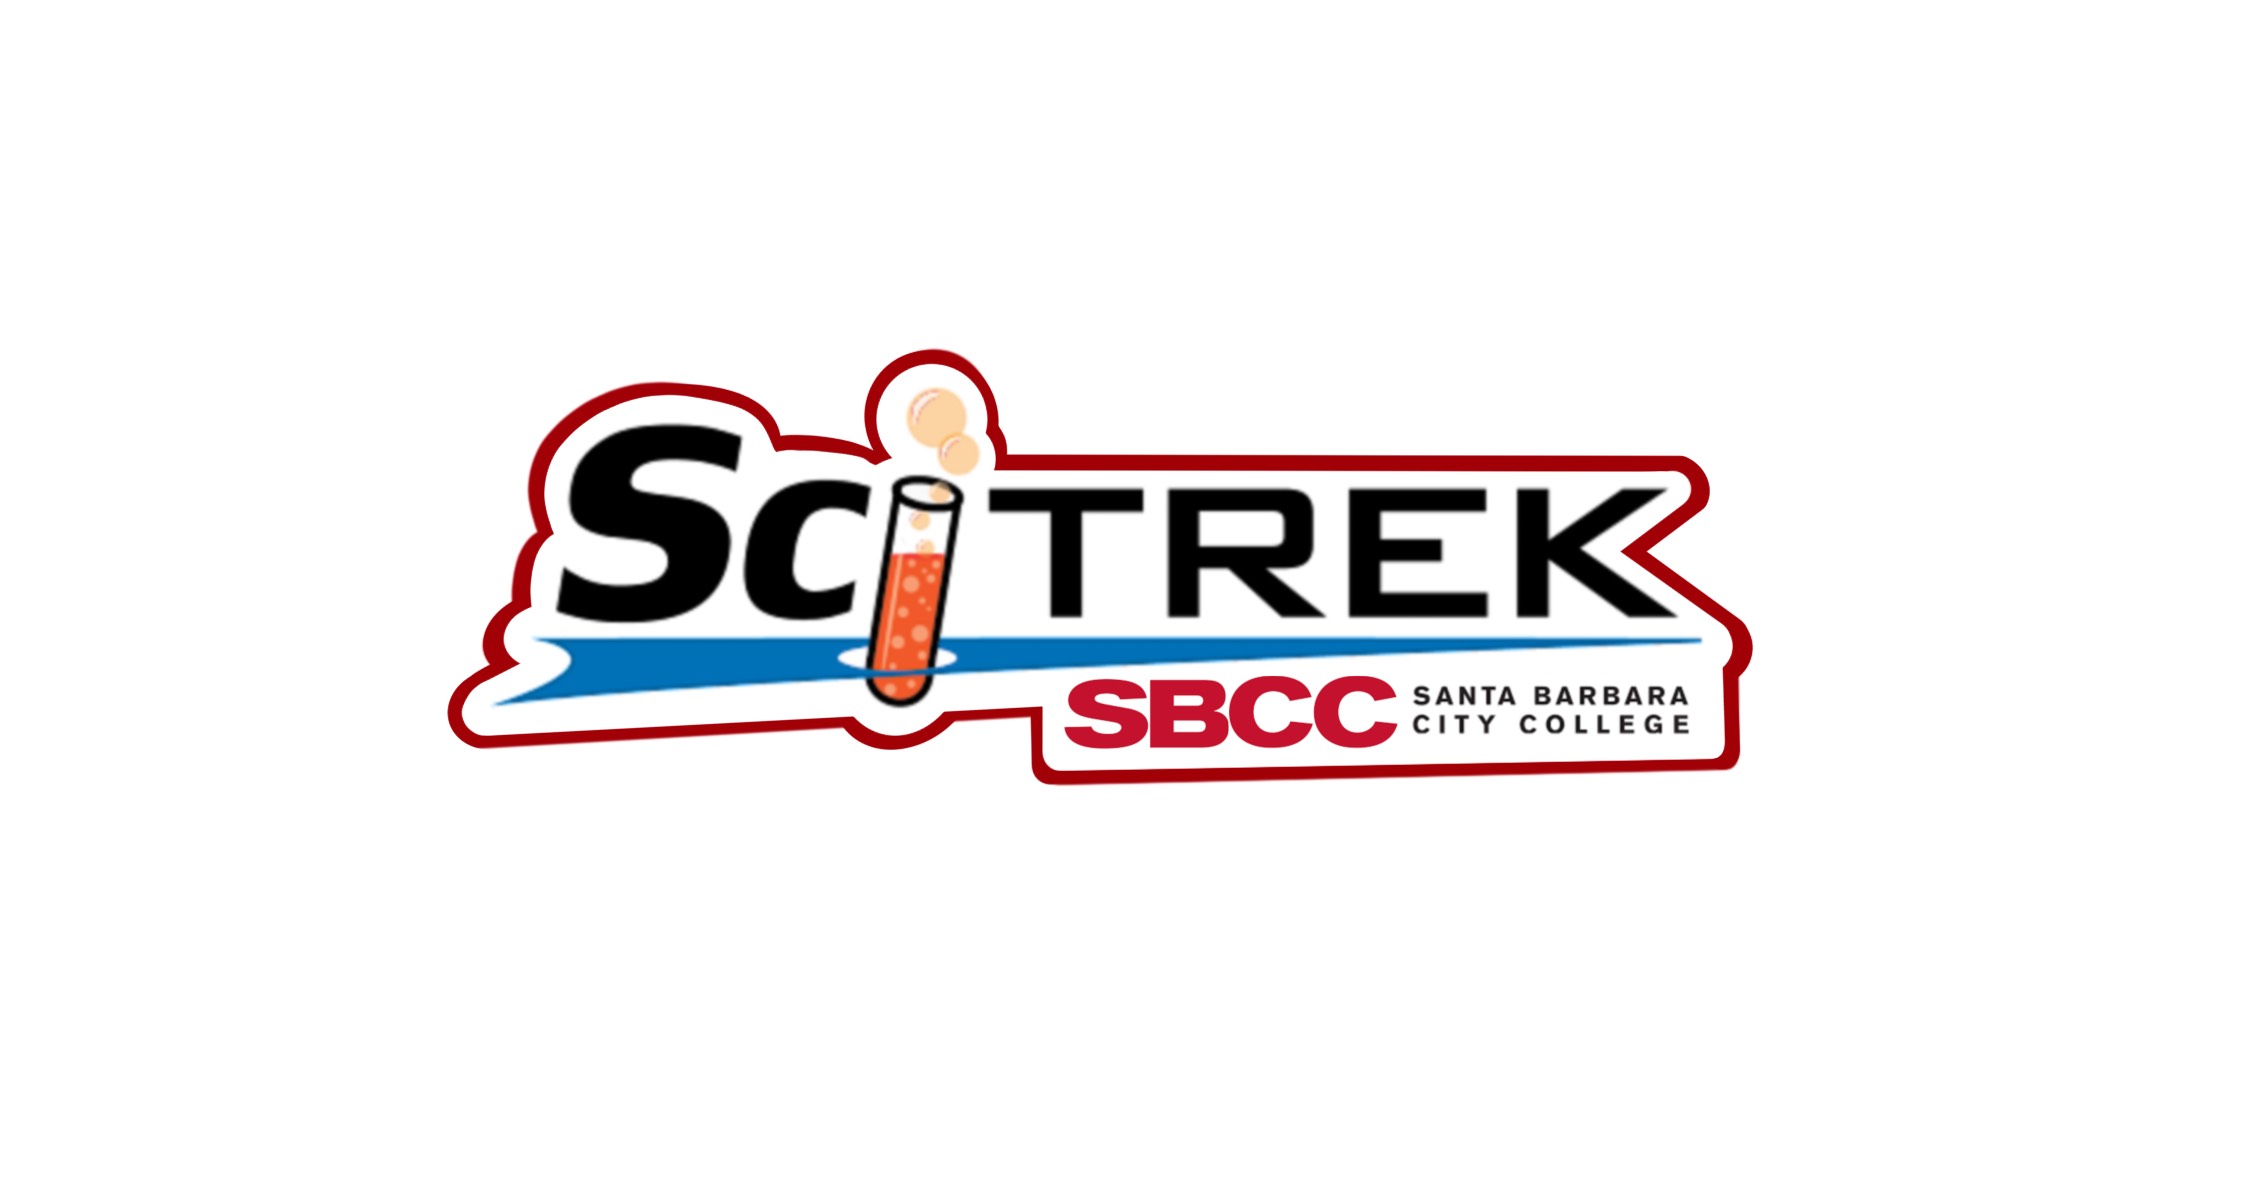 SciTrek SBCC logo